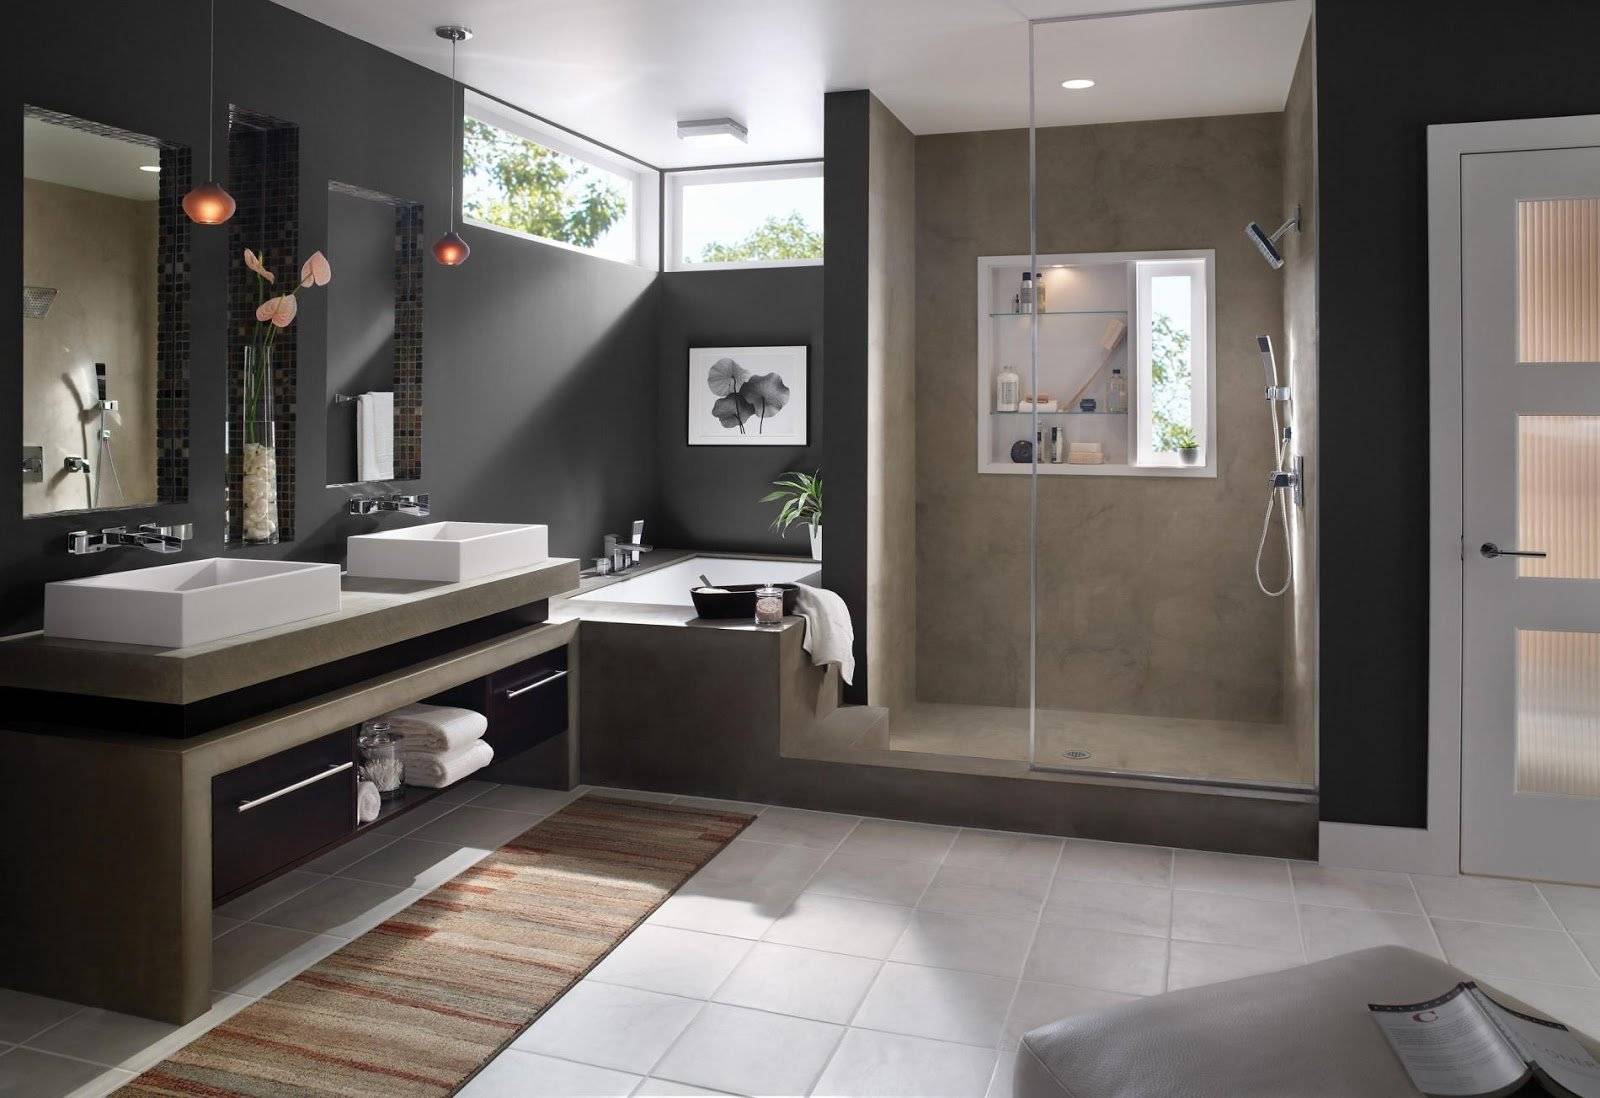 Стиль для ванной комнаты – какой выбрать? ищем гармоничные решения - интерьерные штучки